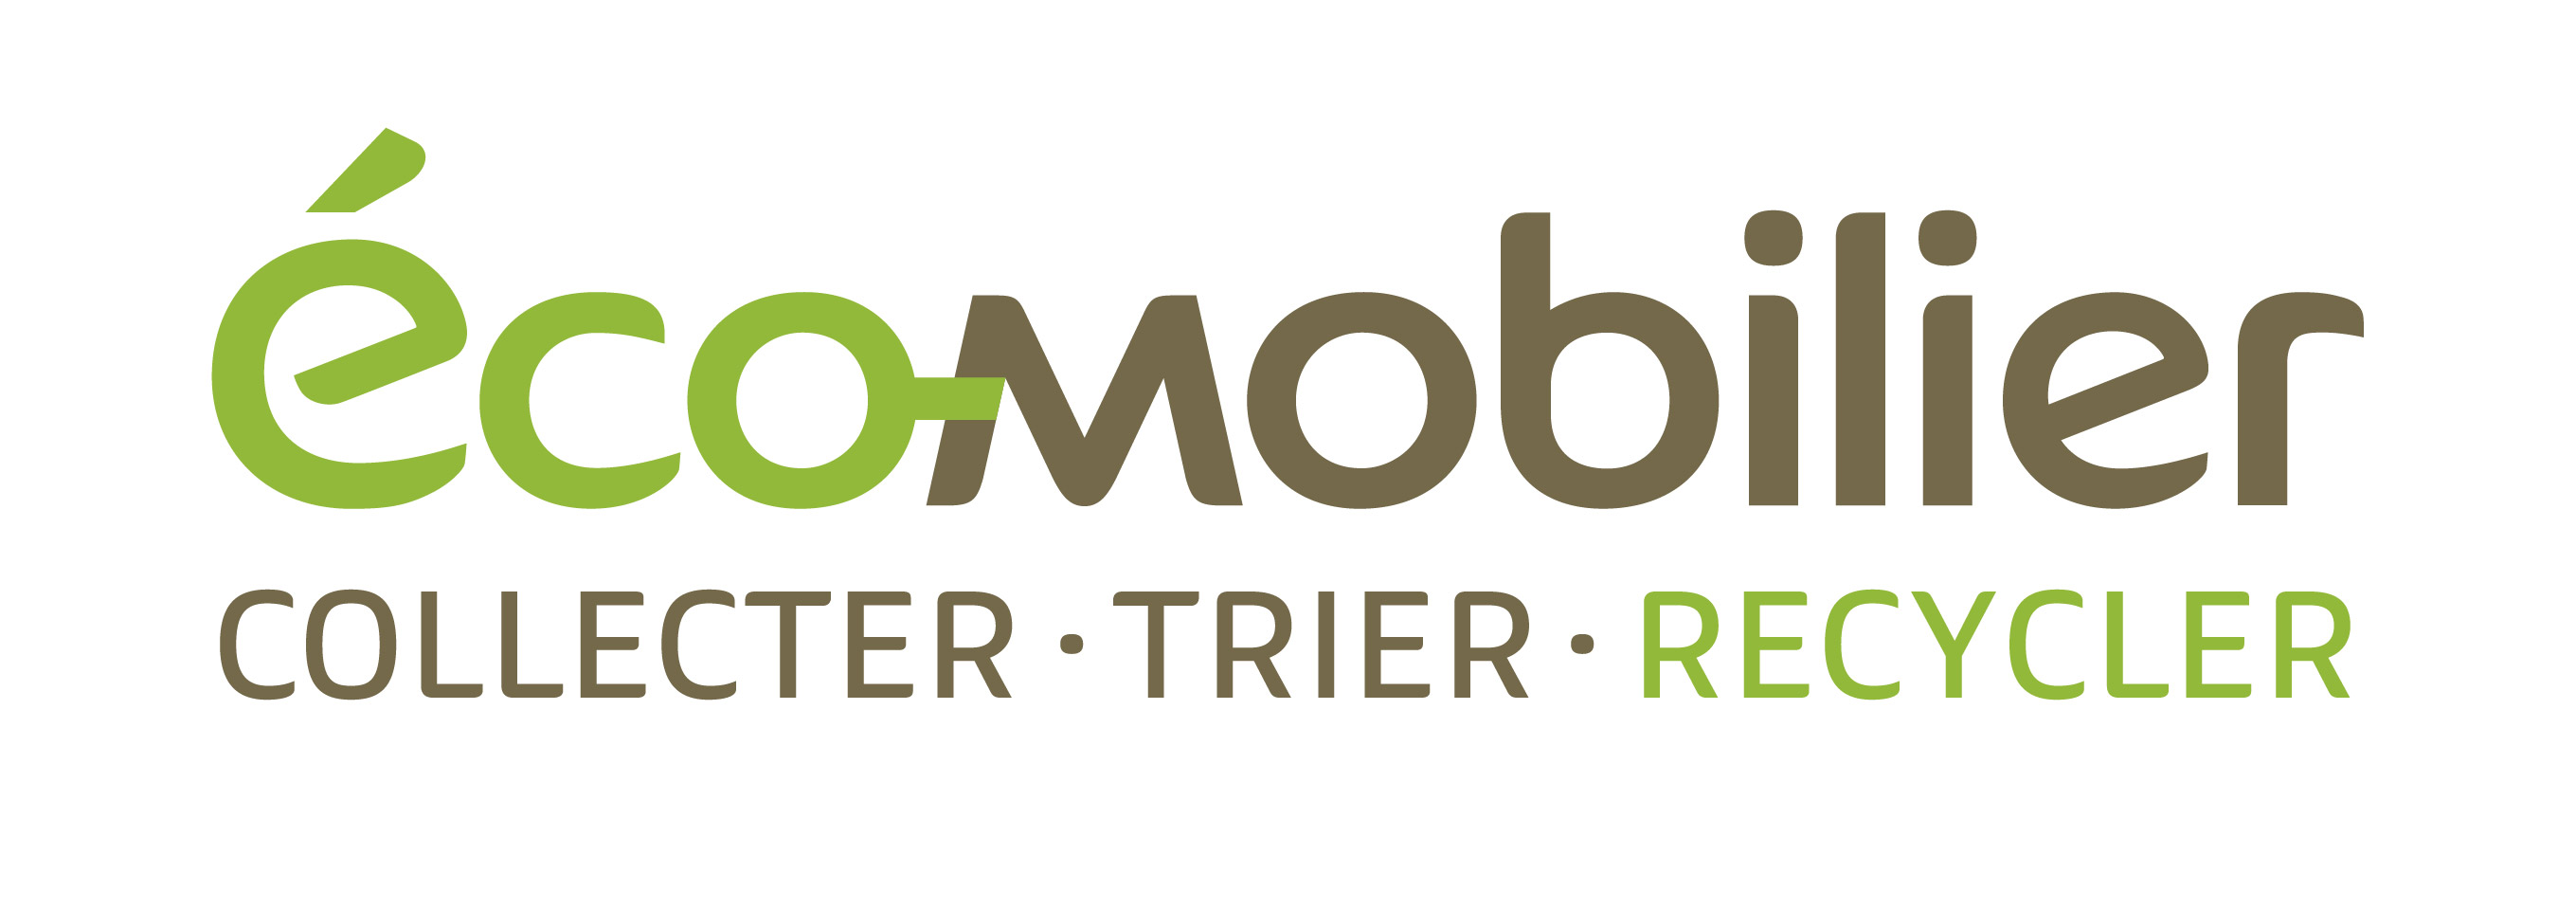 eco-mobilier_logo-signature_rvb.jpg